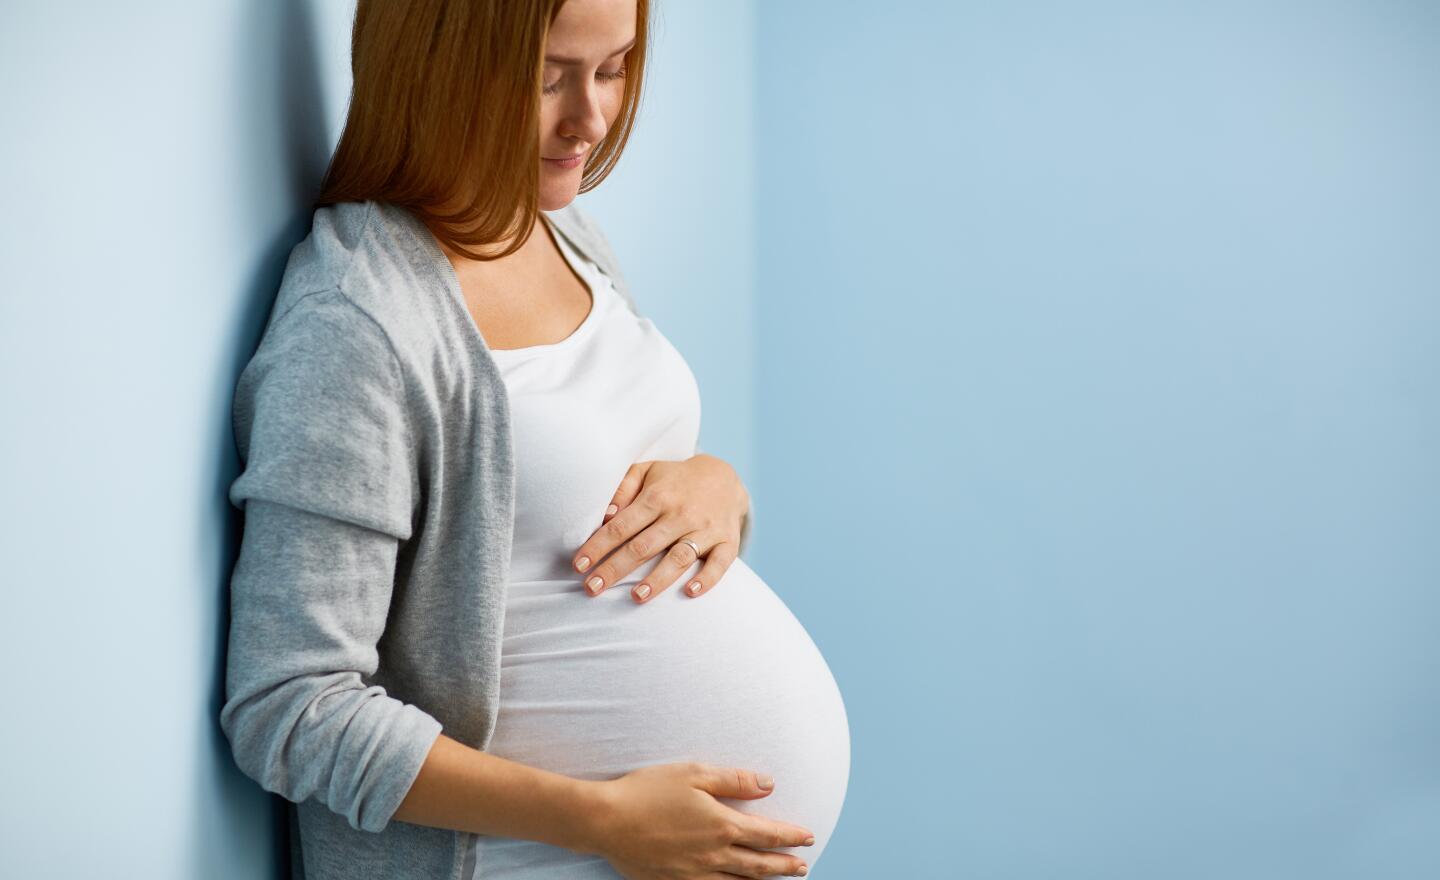 du_articles_pregnant_woman_header